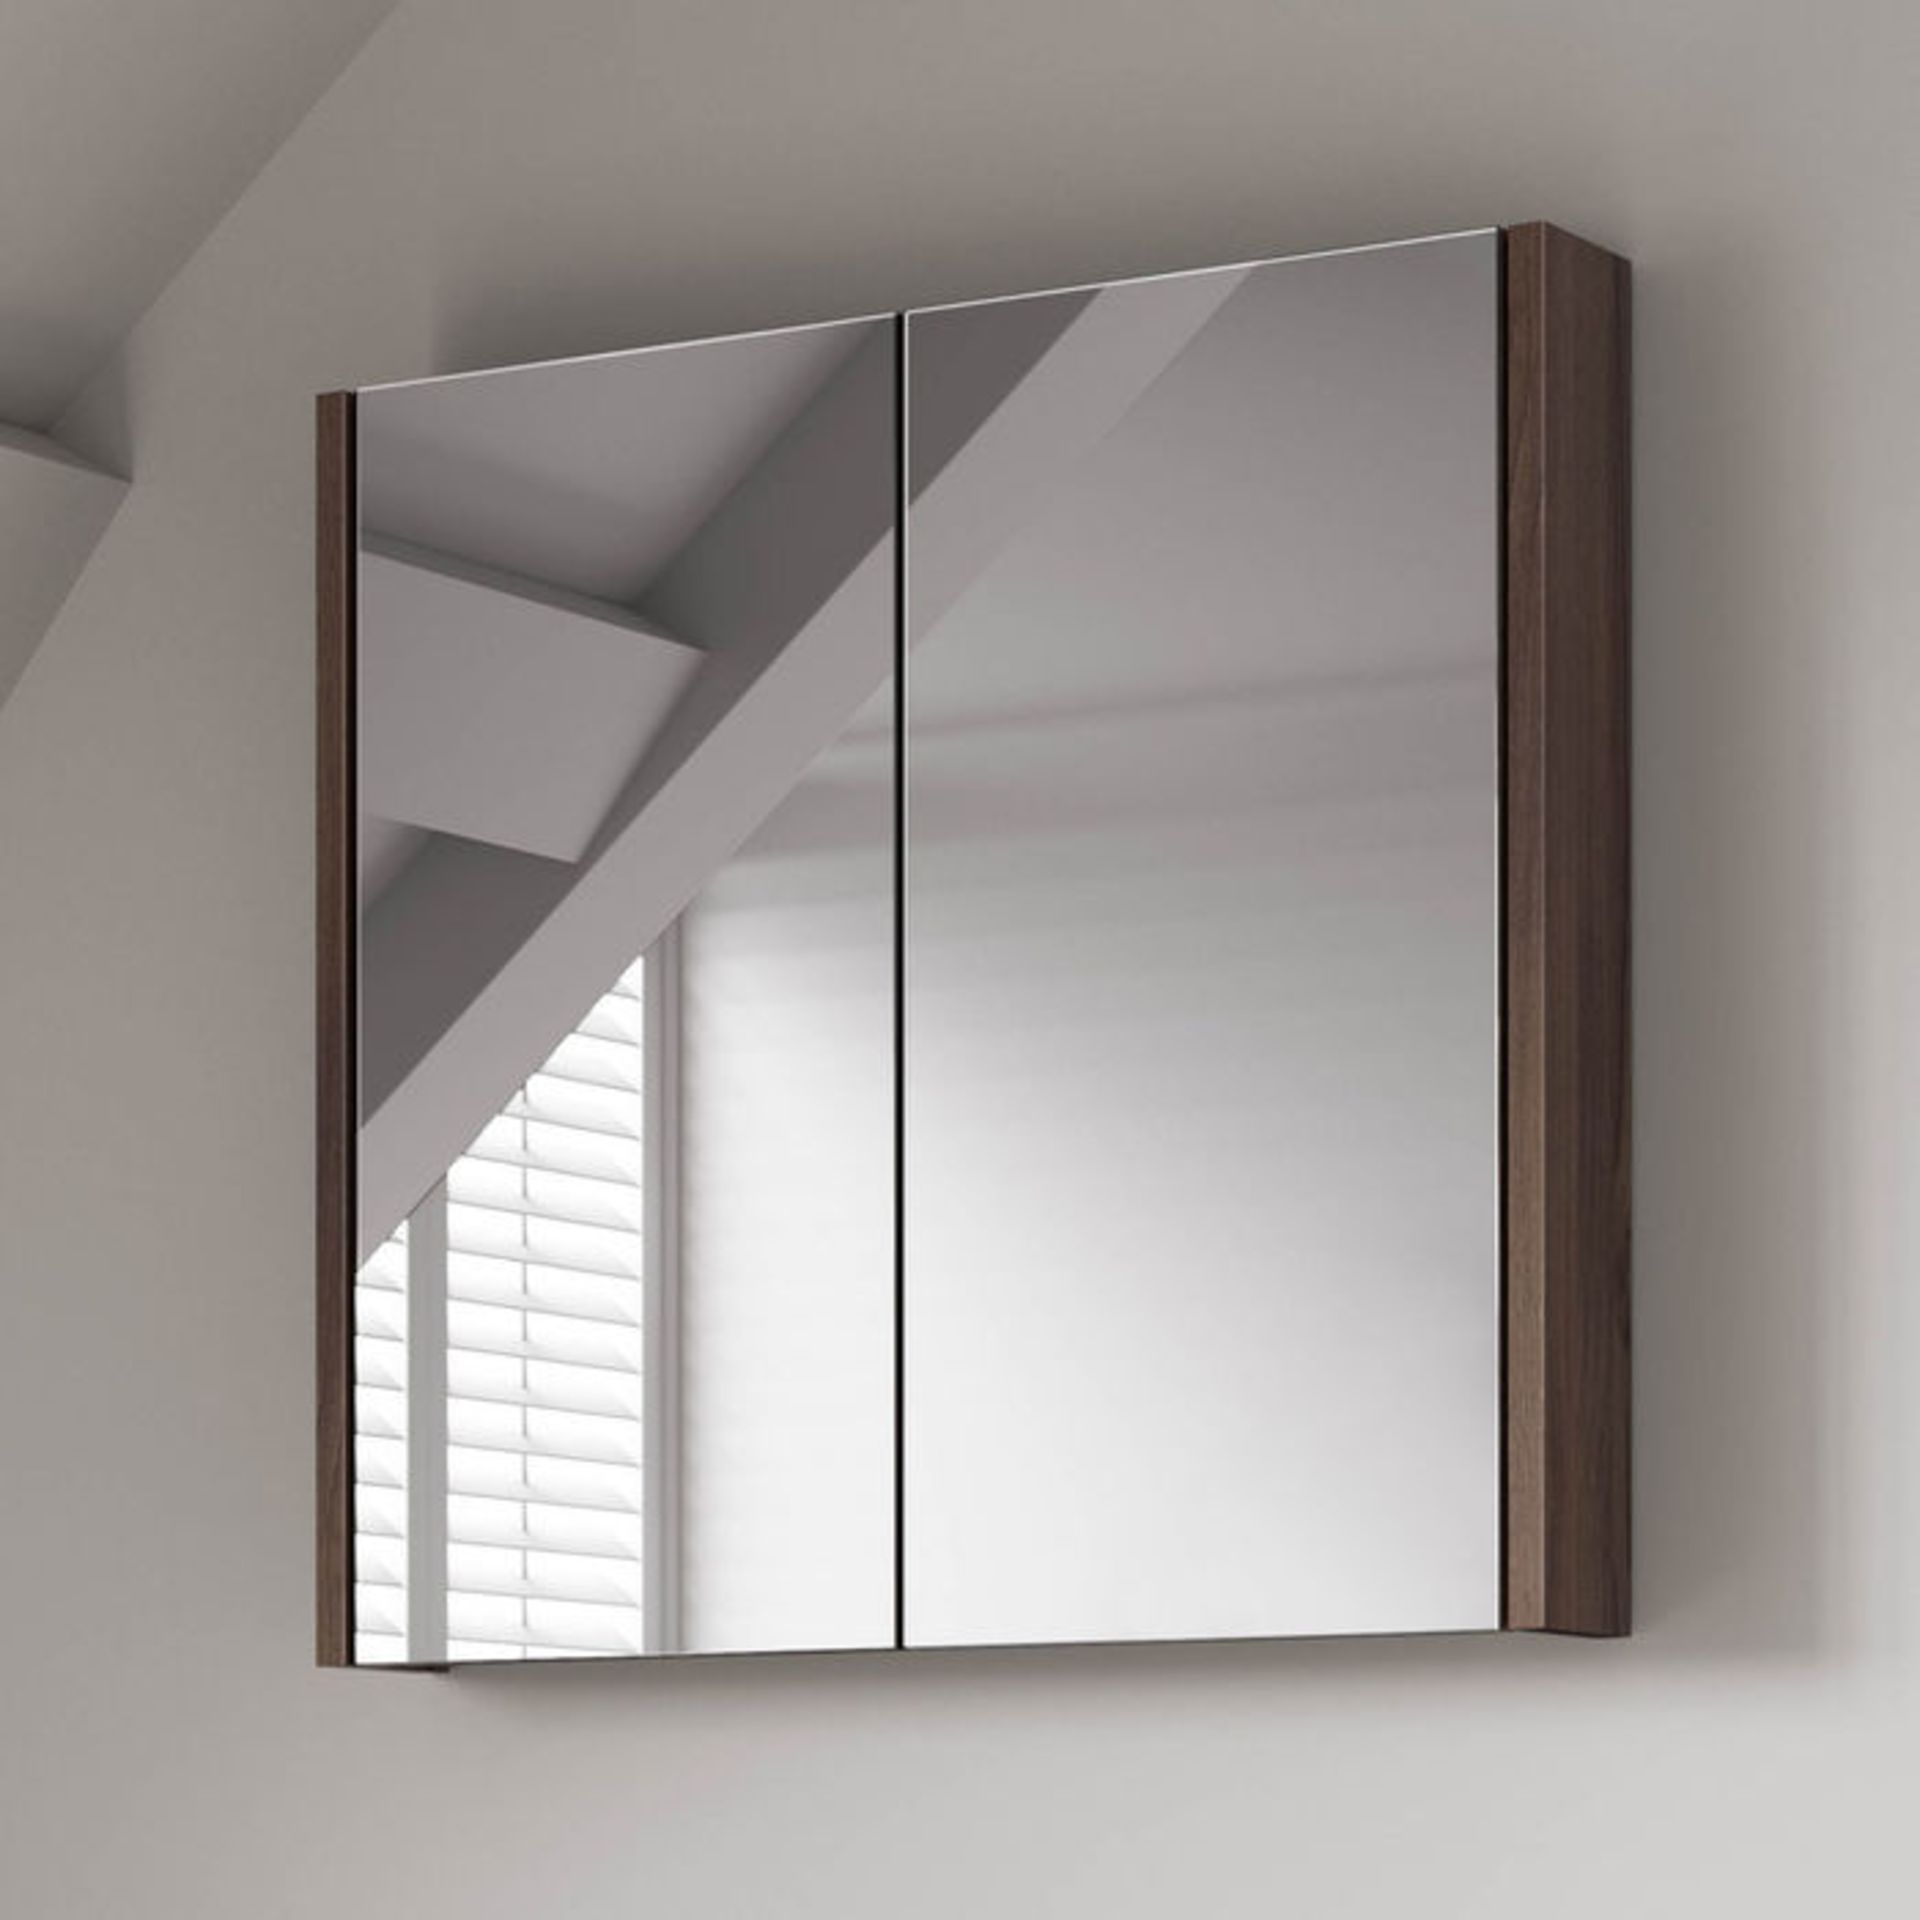 (H127) 600mm Walnut Effect Double Door Mirror Cabinet RRP £174.99 Sleek contemporary design Double